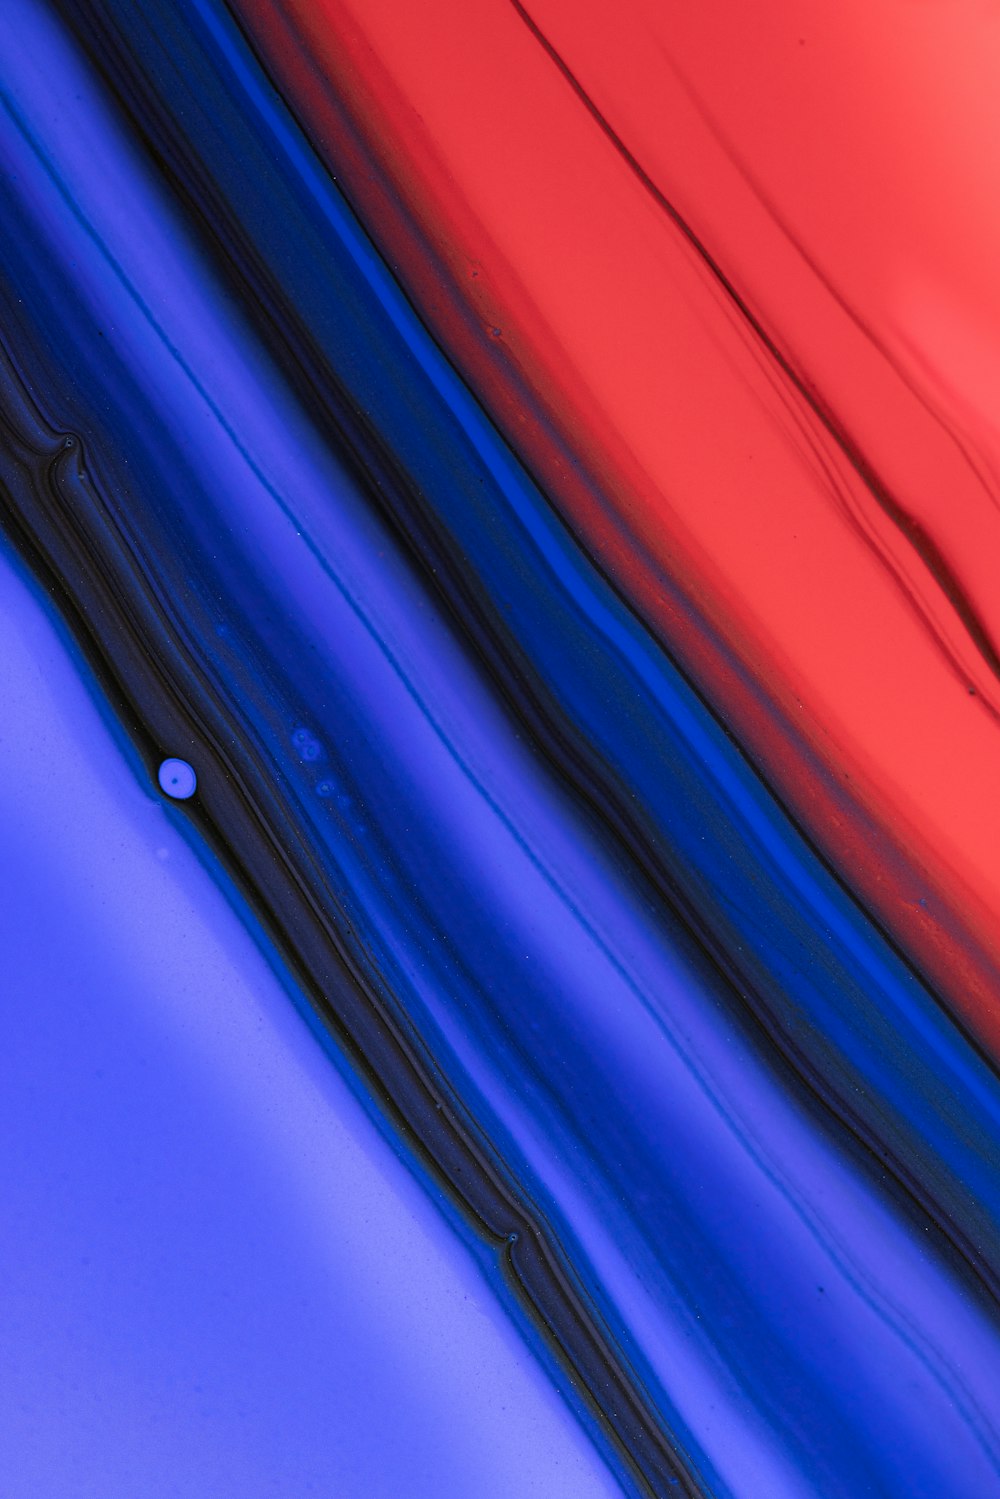 Gros plan d’un objet rouge, bleu et noir